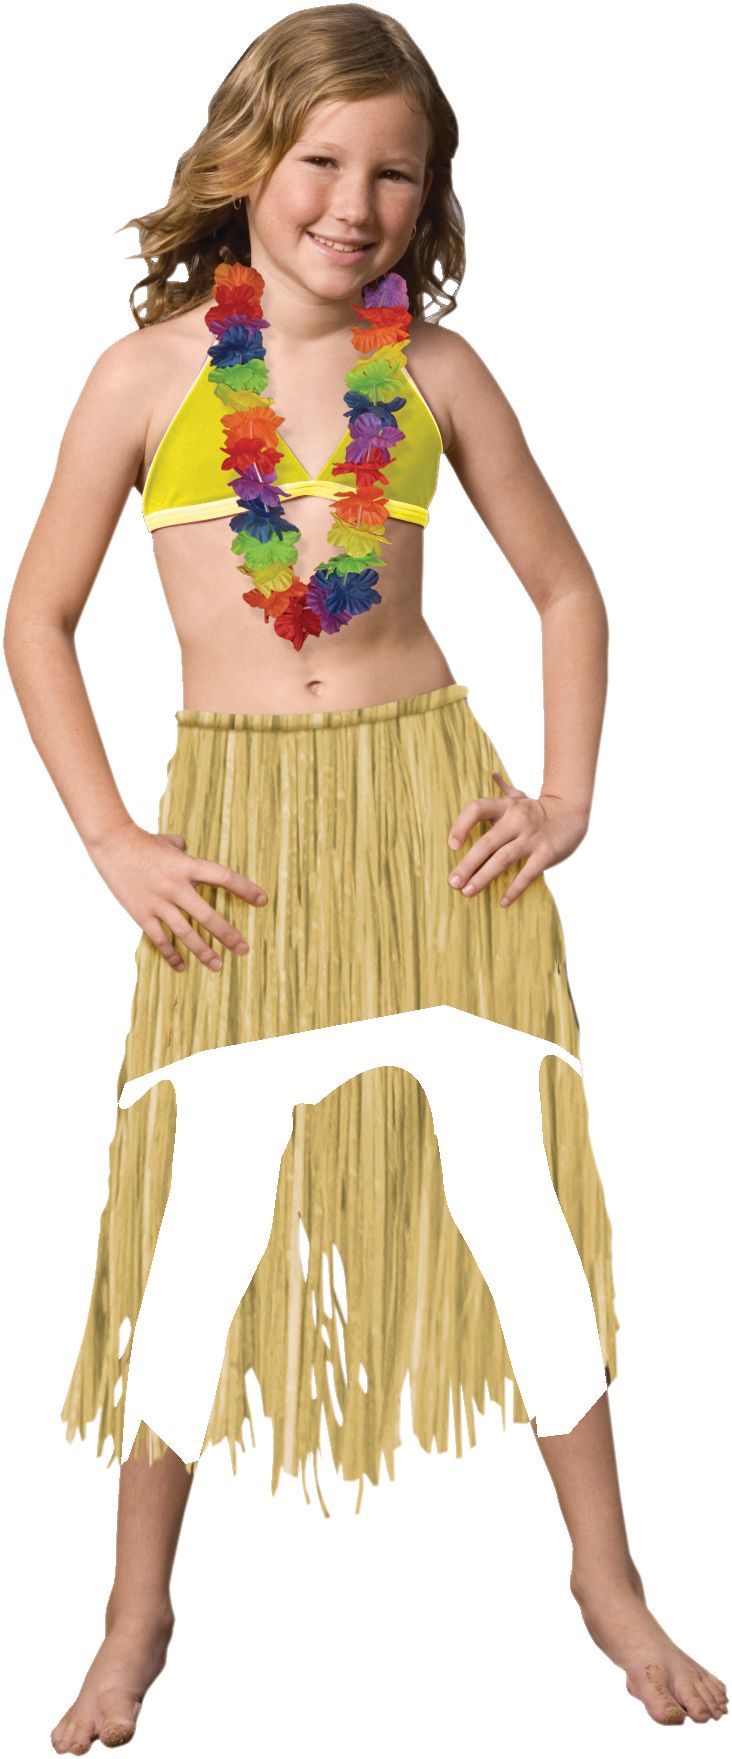 Green Raffia Grass Skirt - Hawaiian - Costume Accessory - Adult